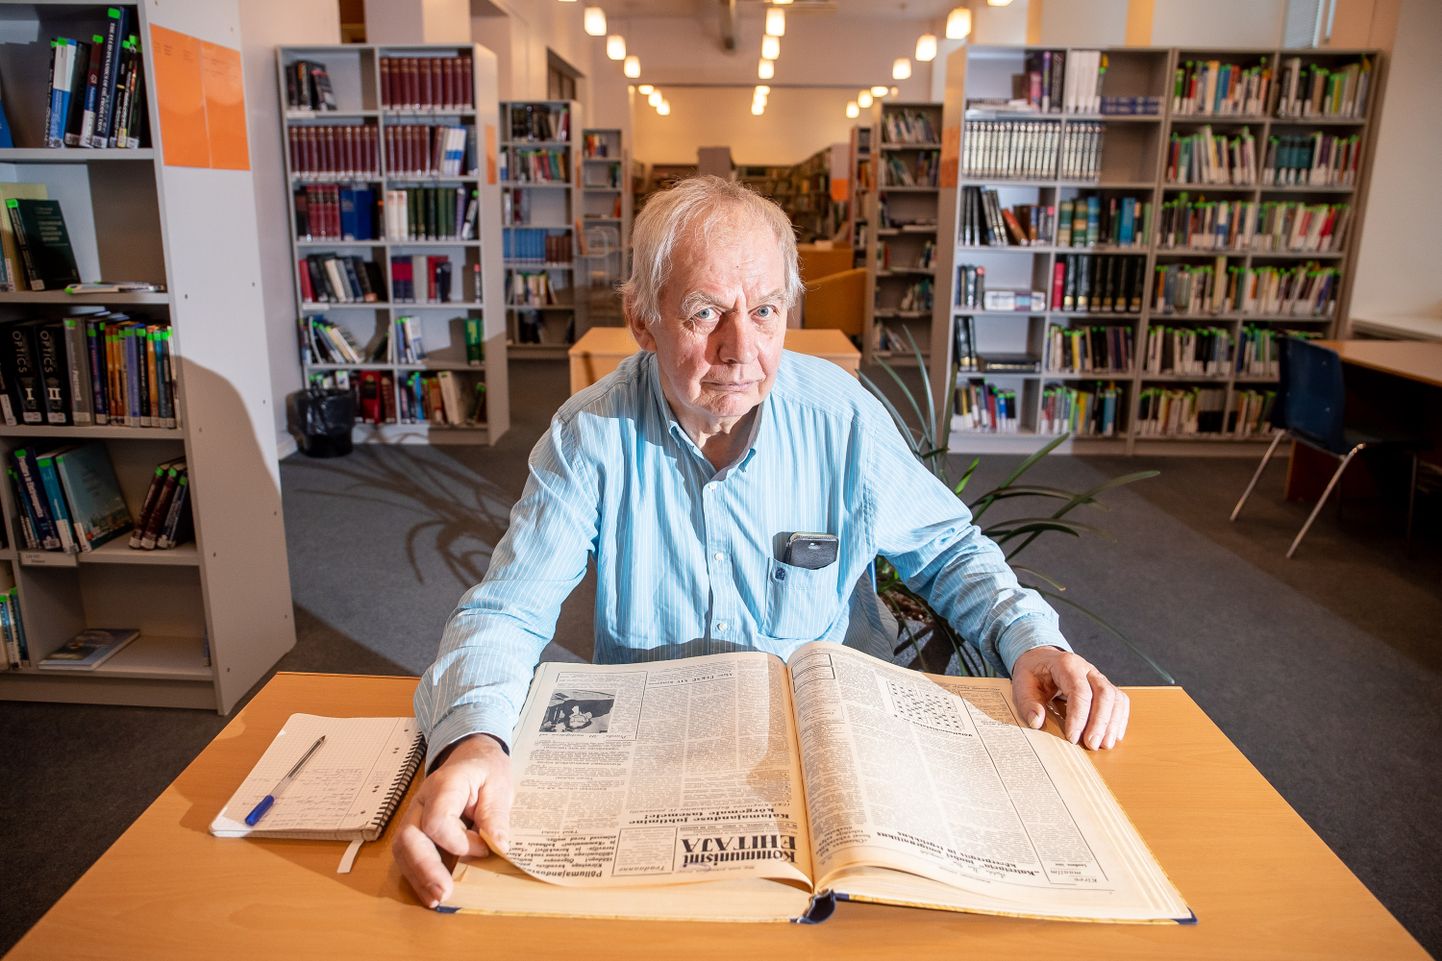 ARHIIVITÖÖ: Paar korda kuus käib Aare Laht Tallinna ülikooli raamatukogus lugemas vanu Saaremaa ajalehti, kust leiab uurimistöö jaoks väärtuslikku materjali.